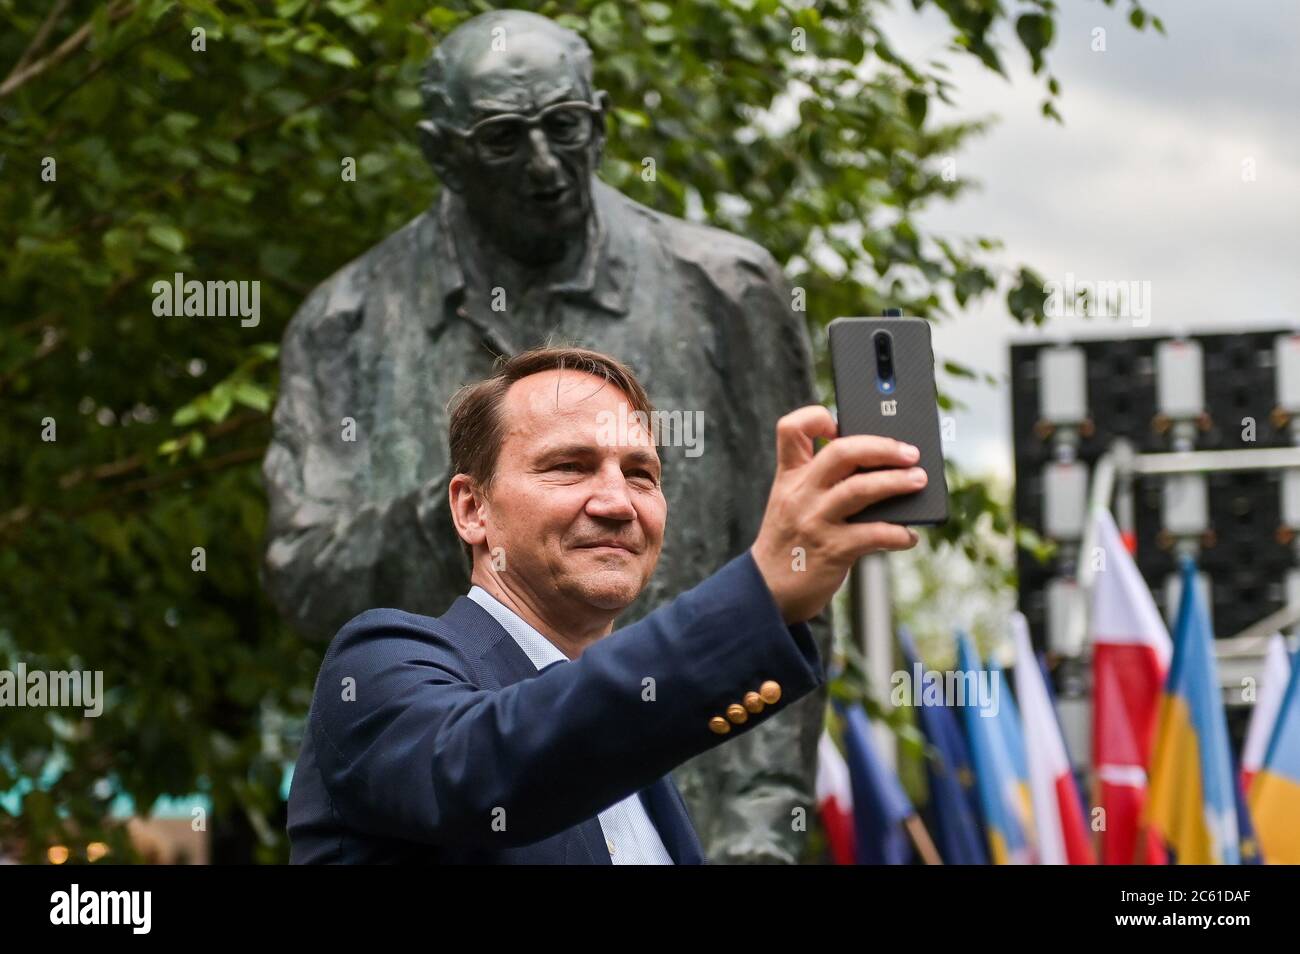 Radoslaw Sikorski prende un selfie durante la presentazione del monumento a Wladyslaw Bartoszewski in Sopot.Wladyslaw Bartoszewski era uno storico polacco, pubblicista, giornalista, scrittore, attivista sociale, politico e diplomatico. Prigioniero di Auschwitz, ufficiale dell'Esercito domestico, attivista dello Stato Underground polacco, partecipante all'insurrezione di Varsavia. Foto Stock